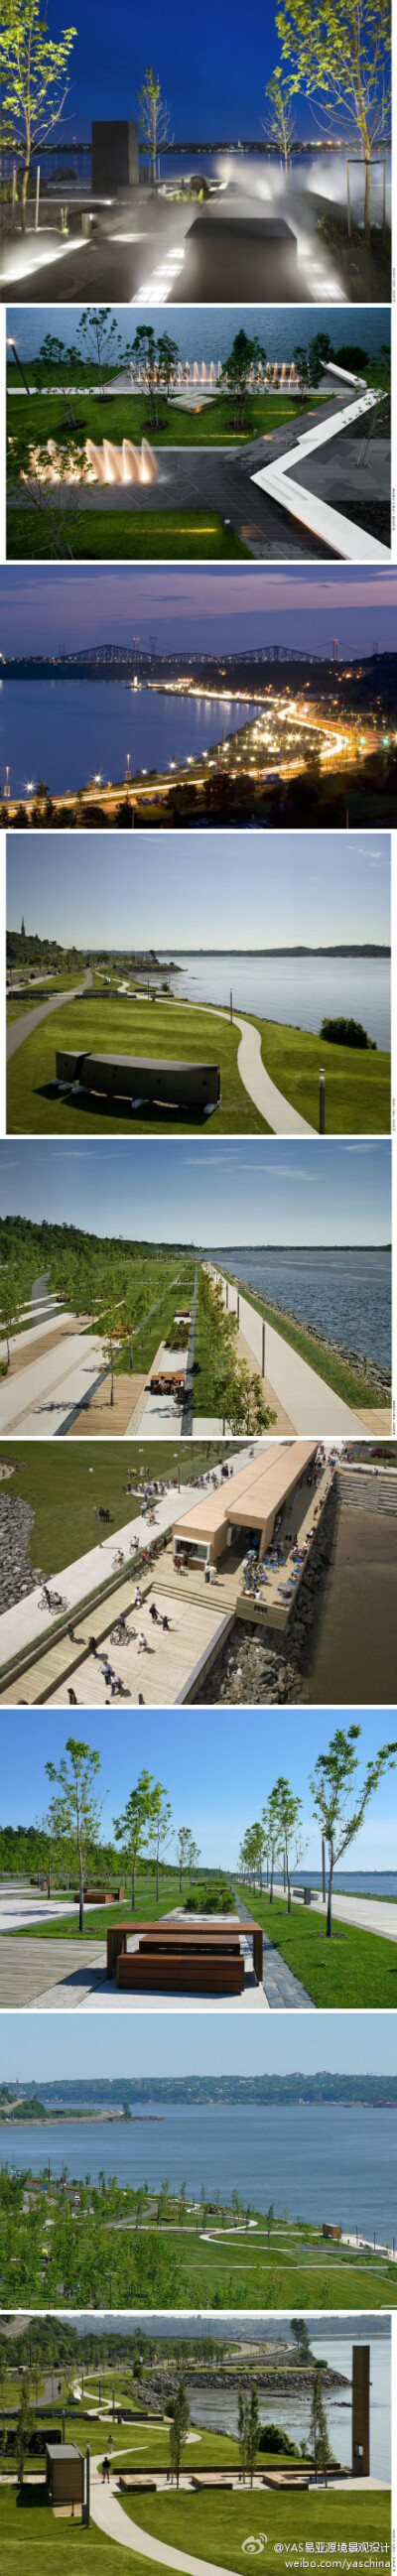 景观设计精华——加拿大魁北克 萨缪尔·德·尚普兰滨水长廊/Daous 萨缪尔·德·尚普兰滨水长廊将一处被人遗忘的工业废墟打造成休闲型的公共自然空间，重新焕发了圣劳伦斯河岸这一城市入口地区的生命力。